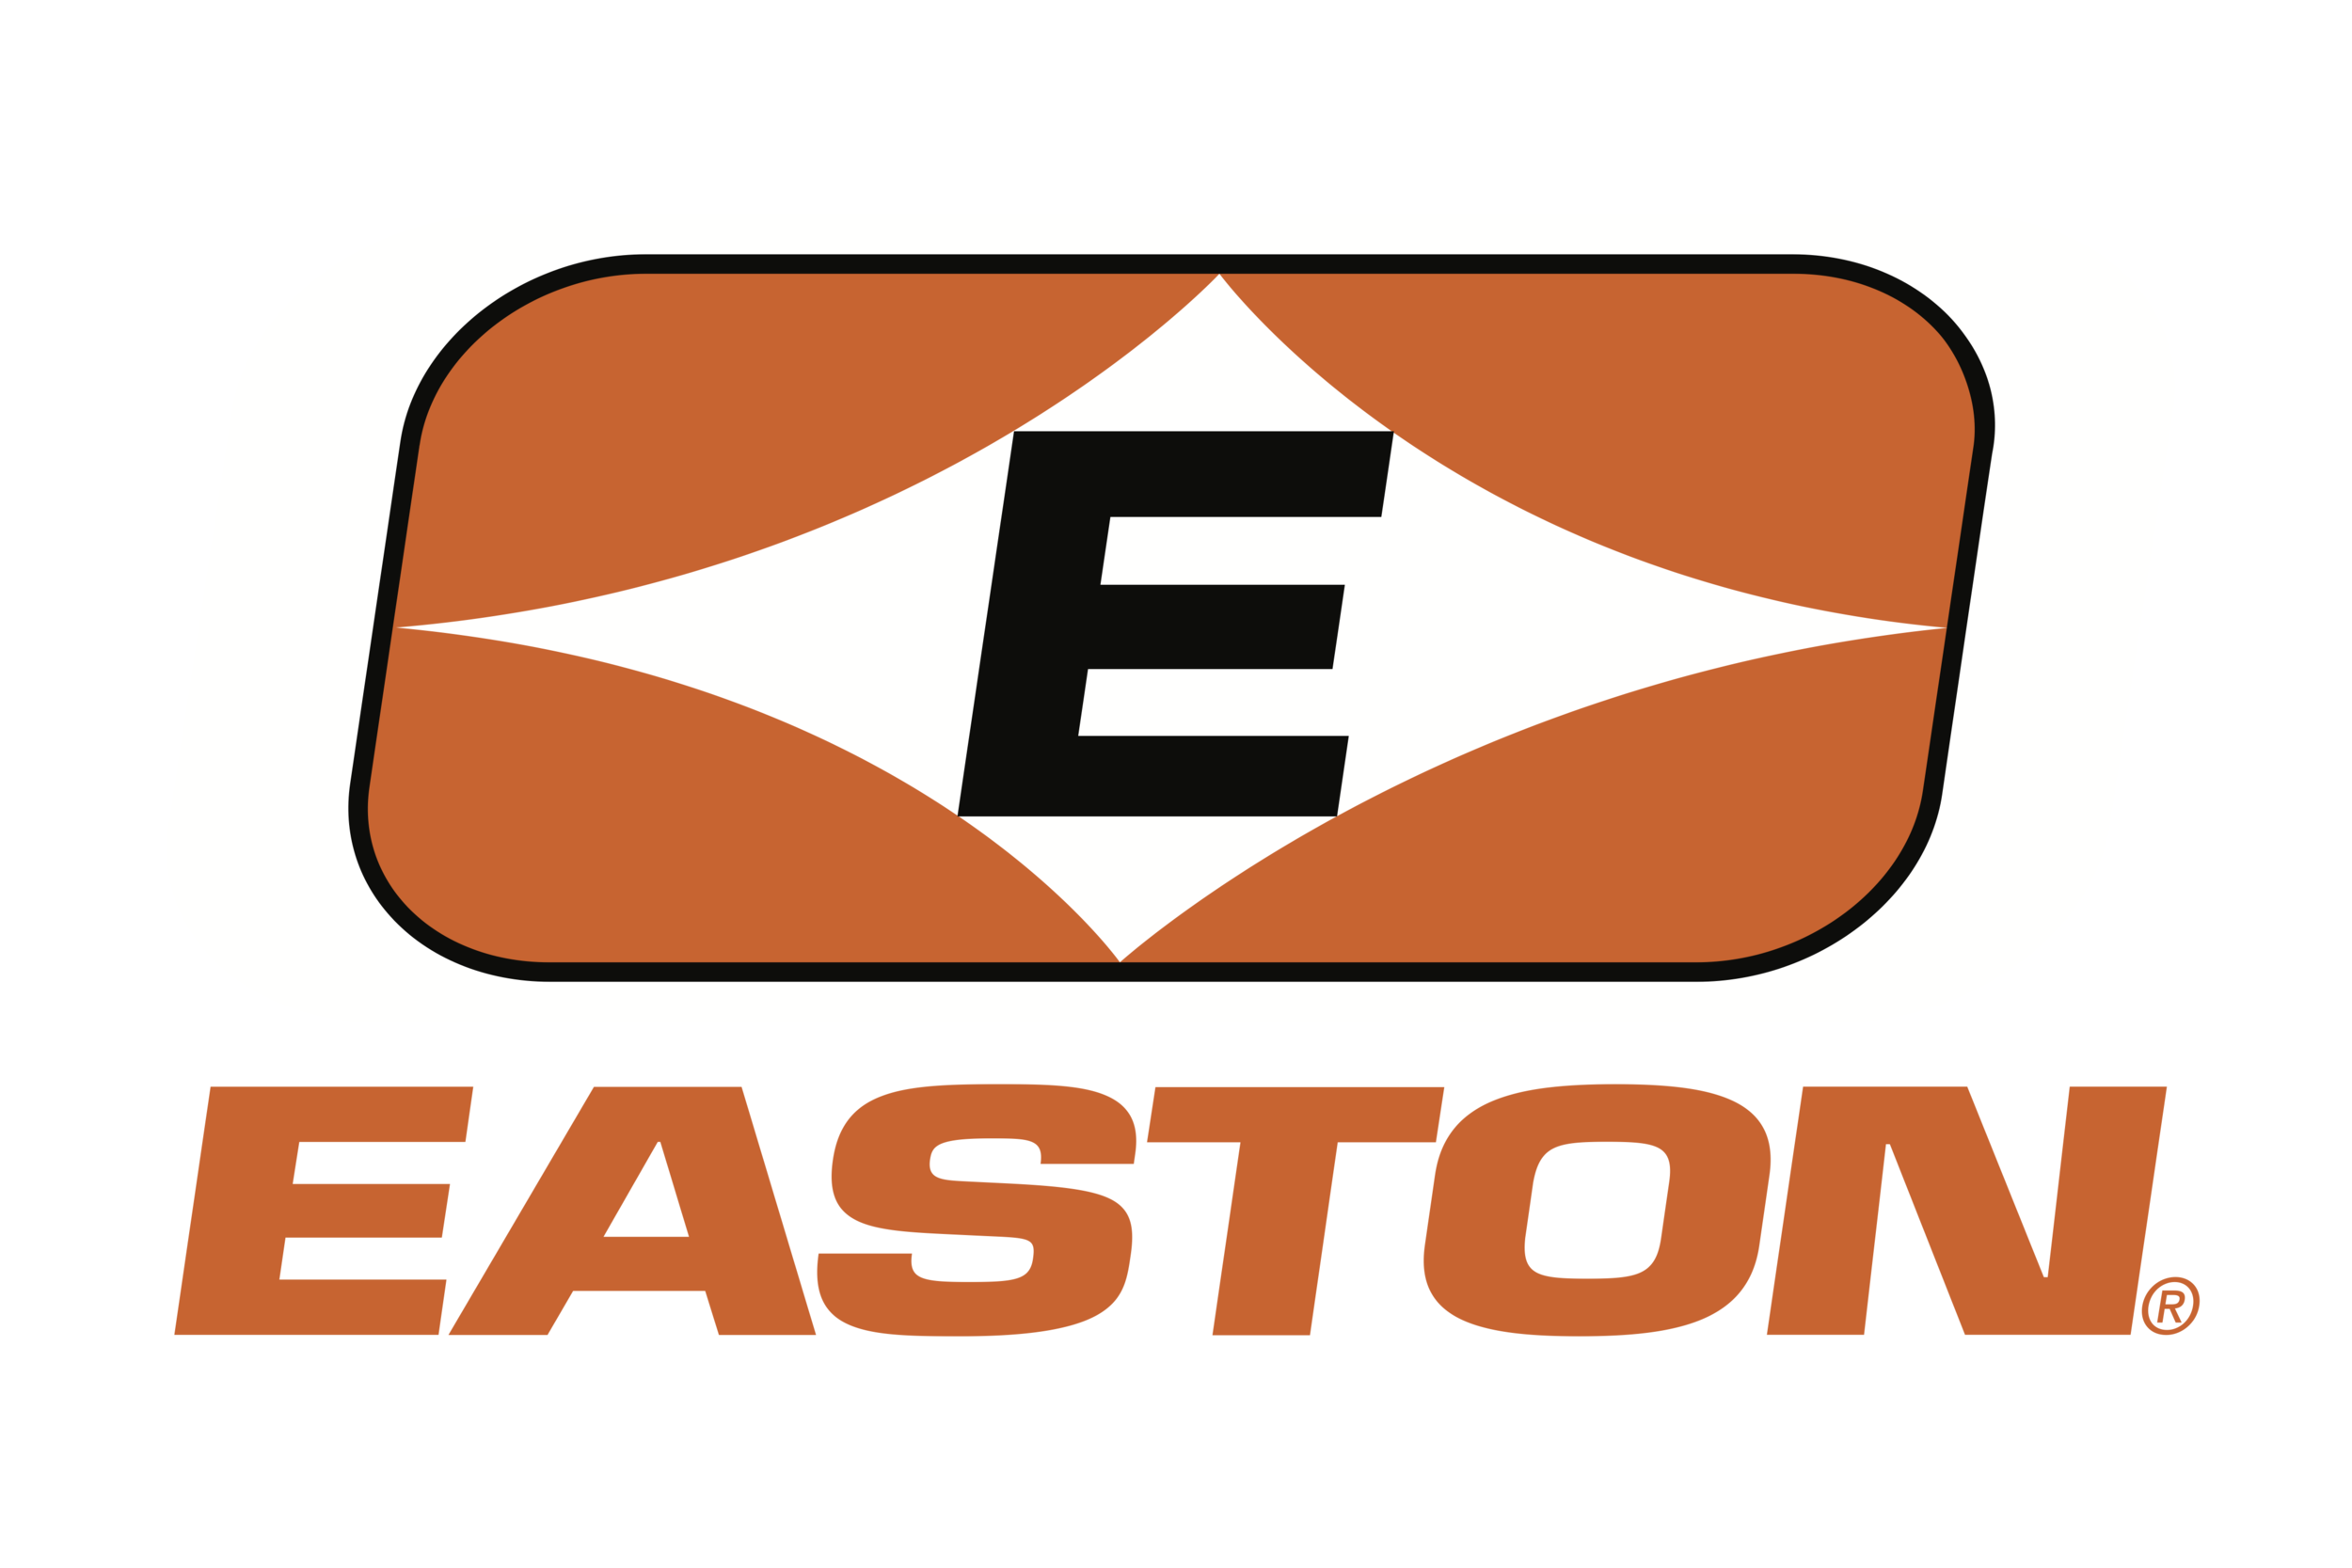 Easton_logo.png